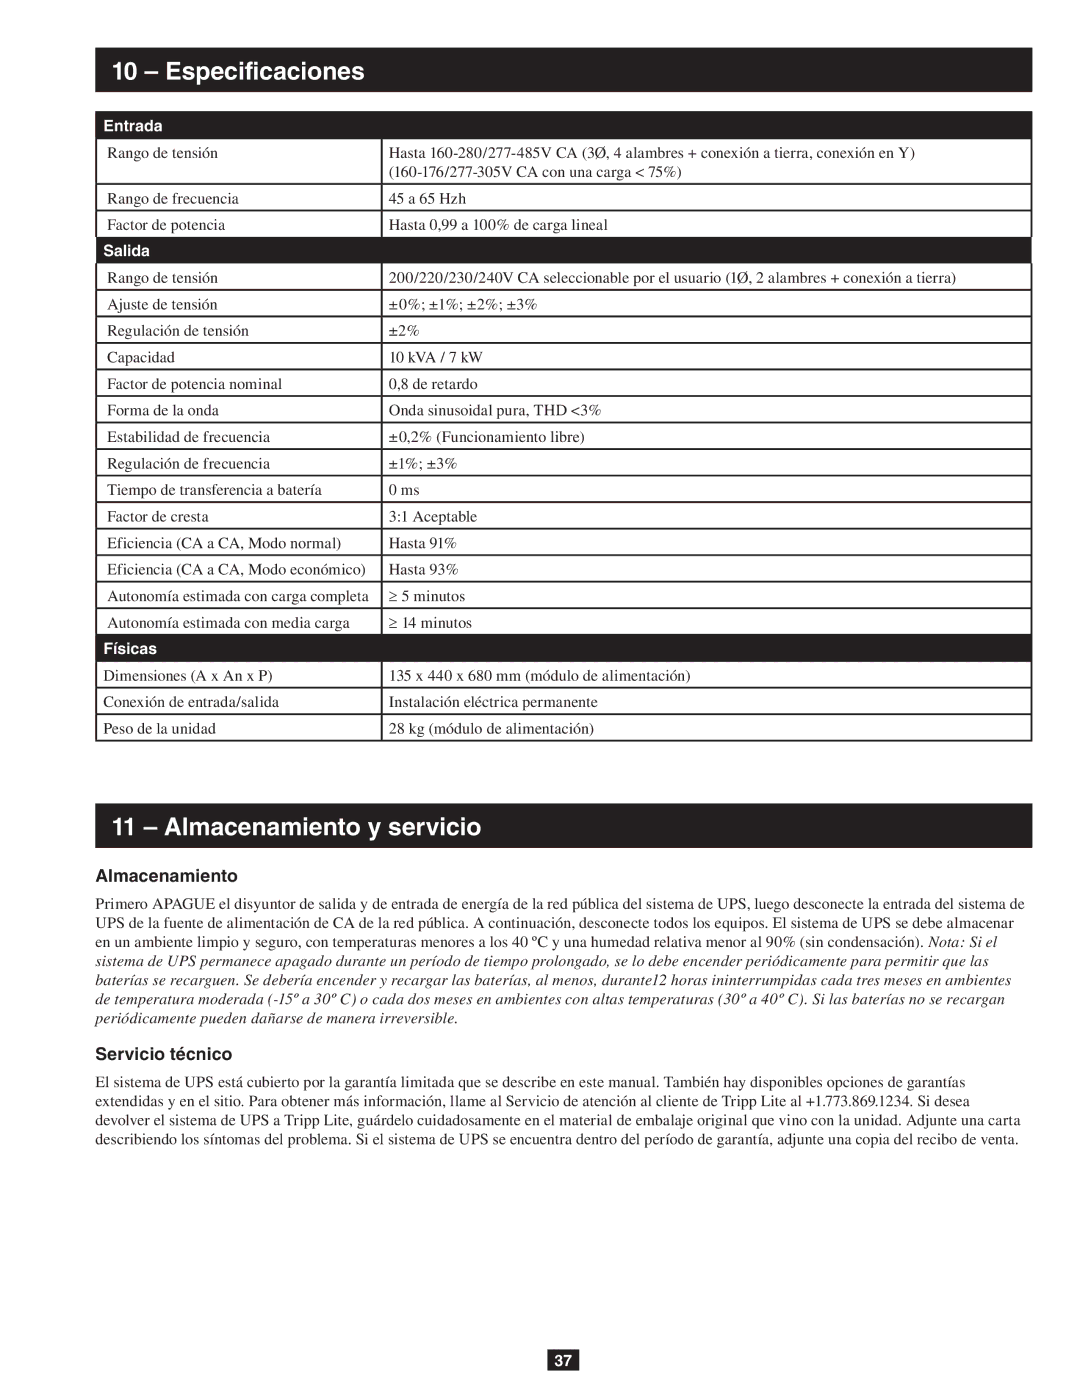 Tripp Lite SU10KRT3/1X owner manual Especificaciones, Almacenamiento y servicio, Servicio técnico 